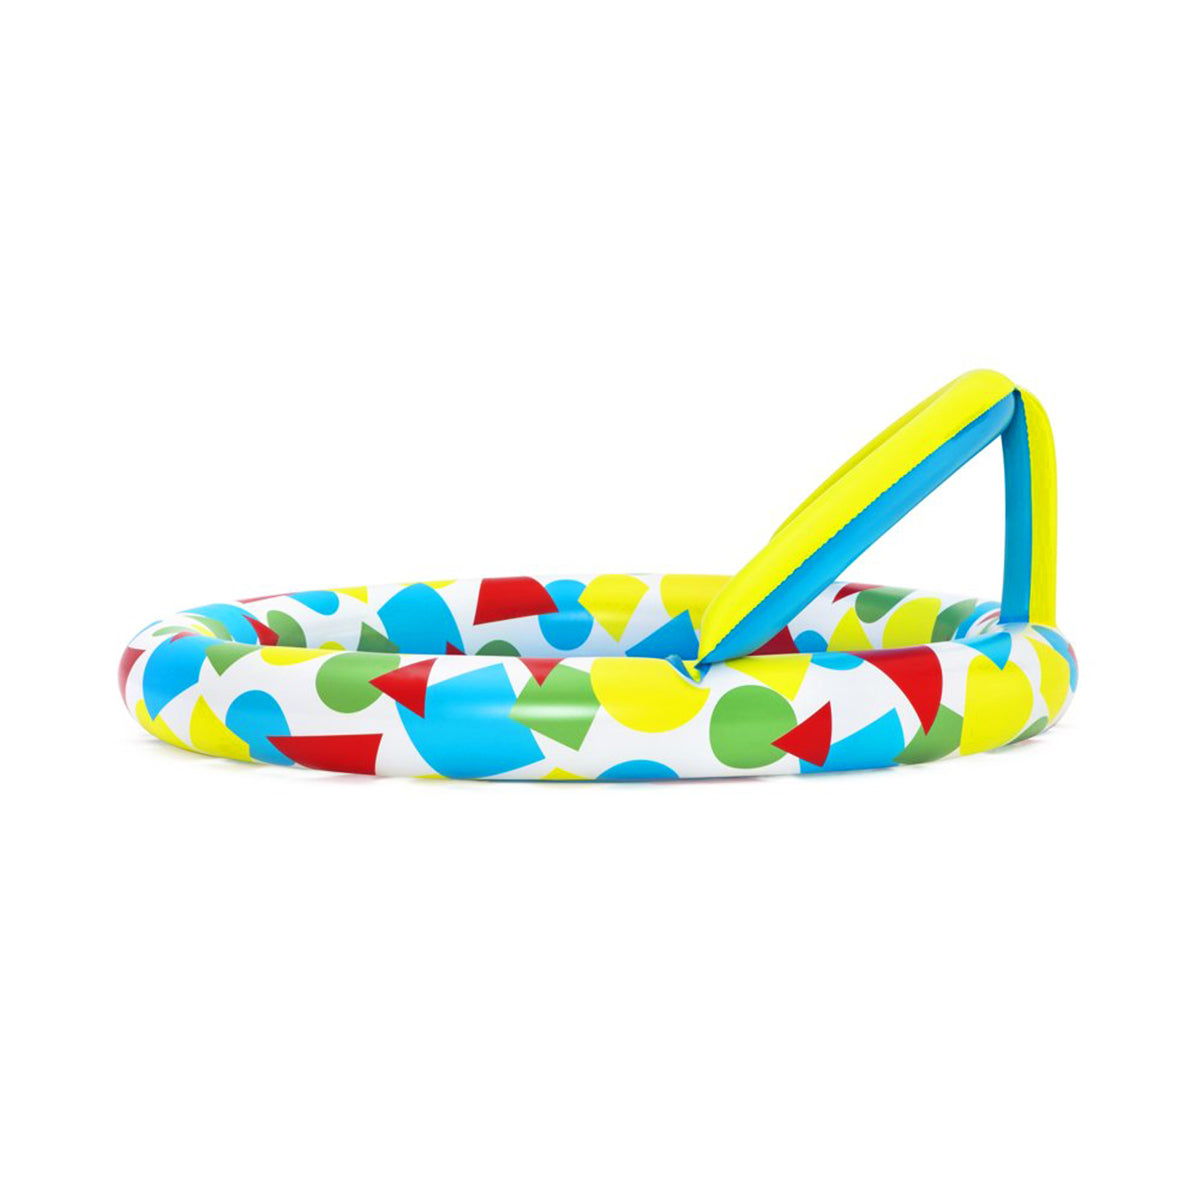 Bestway - Splash & Learn Inflatable Kiddie Pool 52378